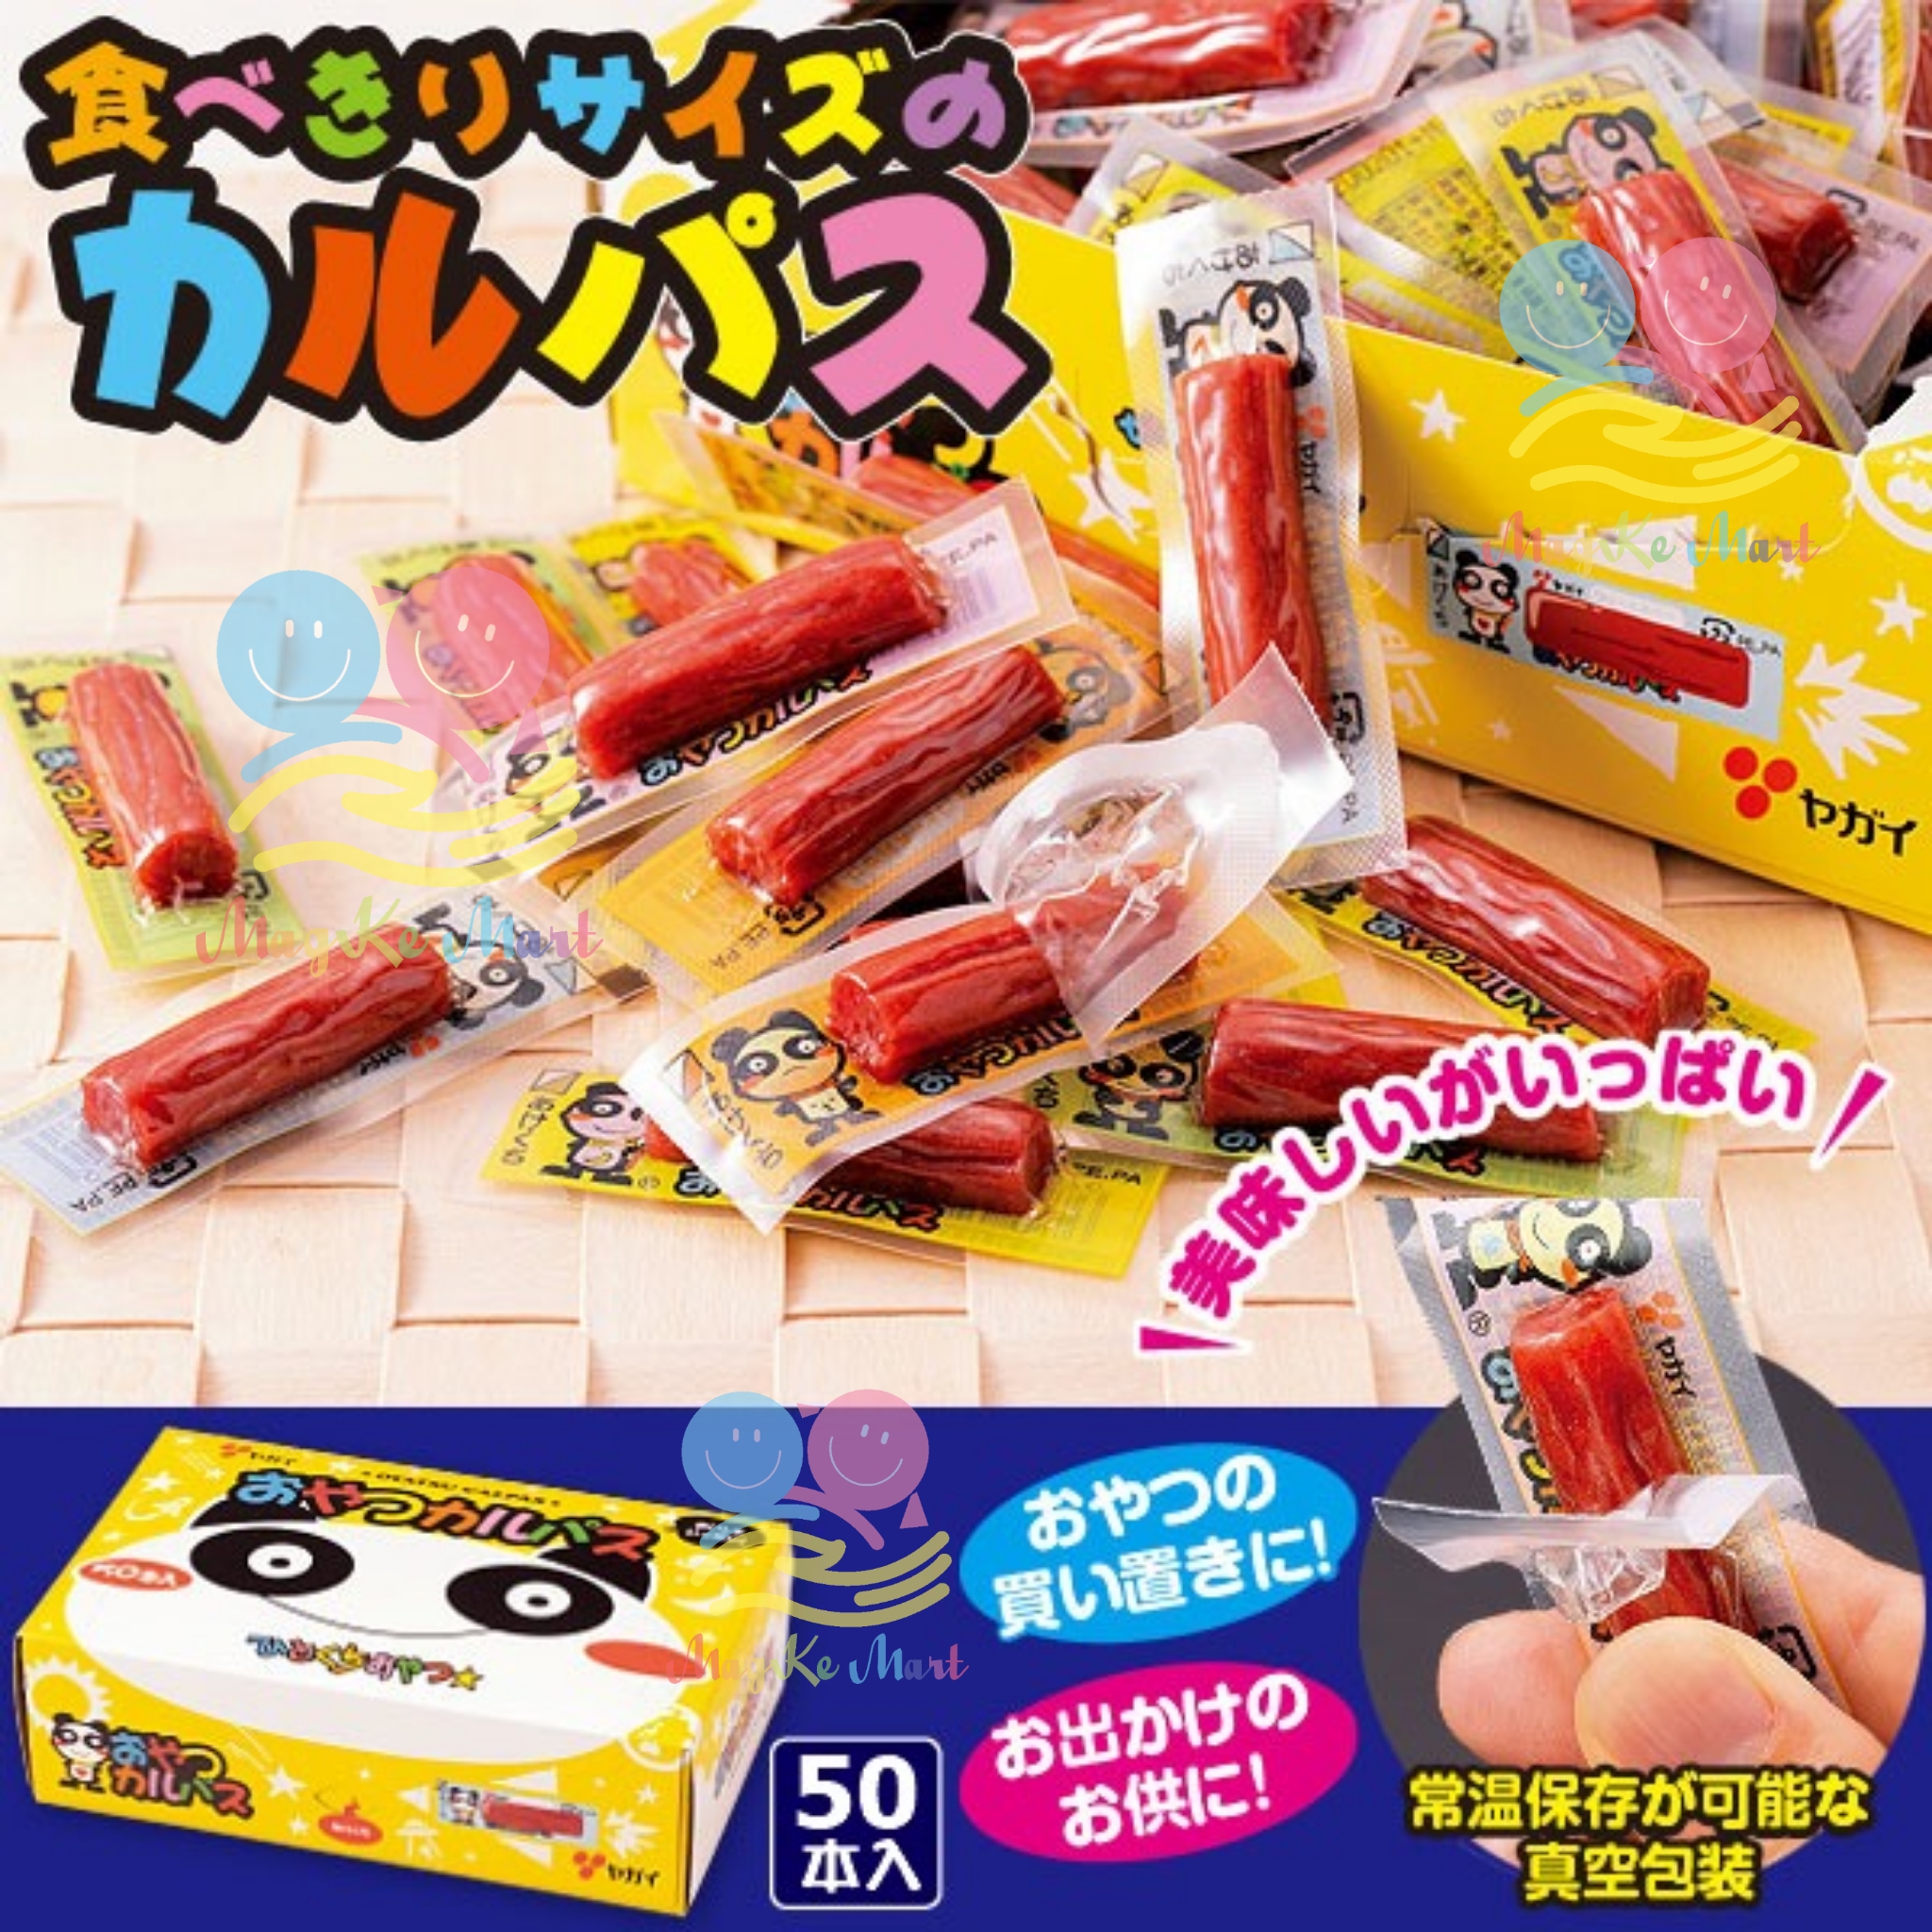 日本氣扇屋迷你肉腸棒棒條(1盒50條)